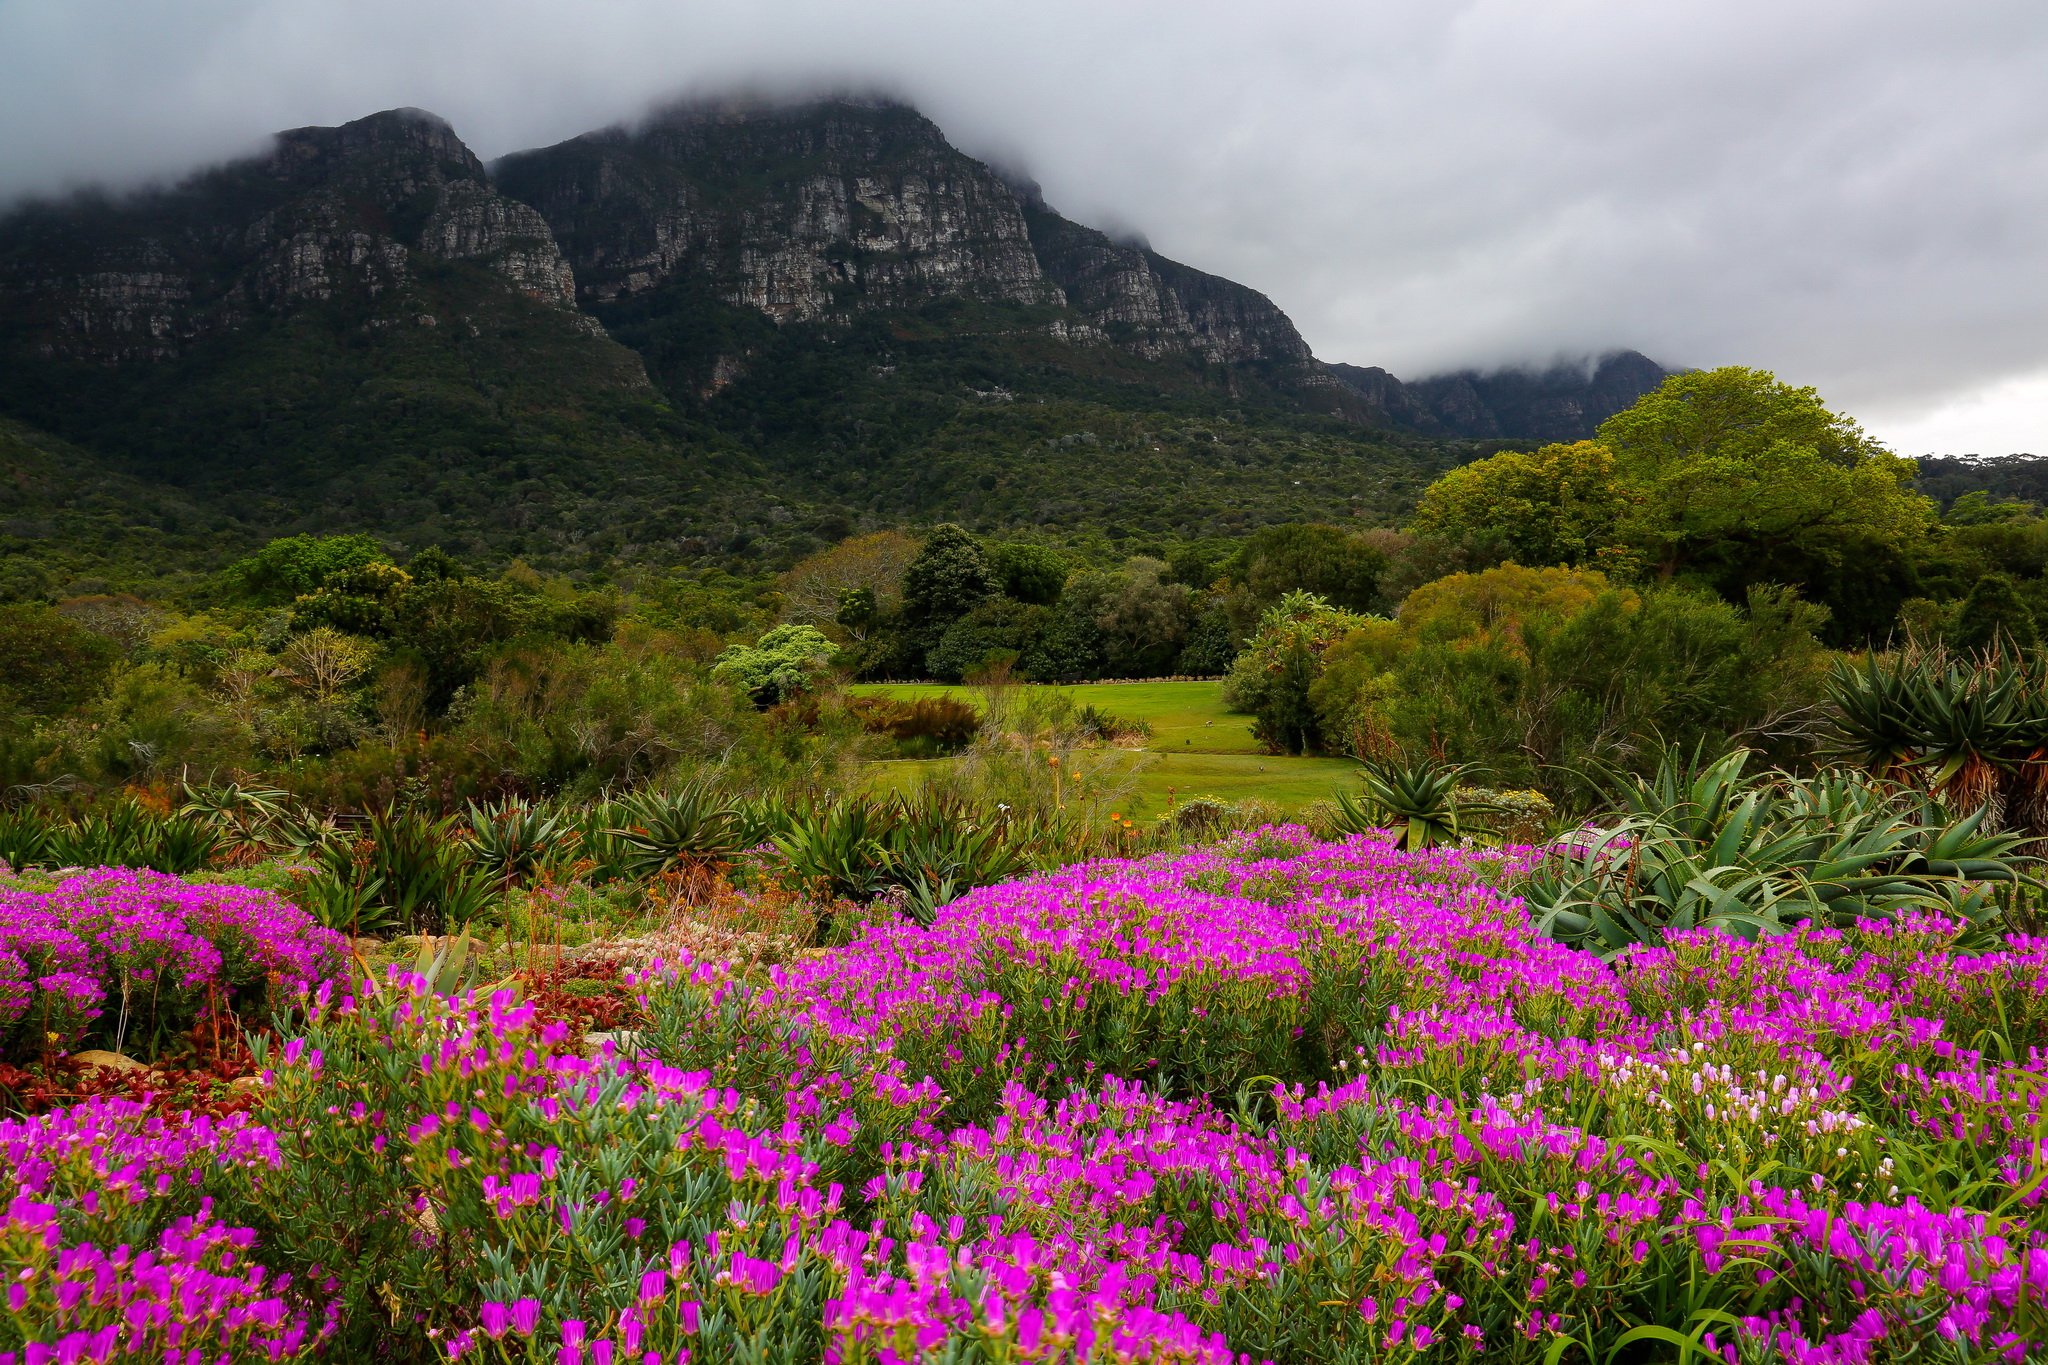 Cape Town, Kirstenbosch National Botanical Garden, Mountains, Trees, Flowers, Clouds, Park, Nature Wallpaper